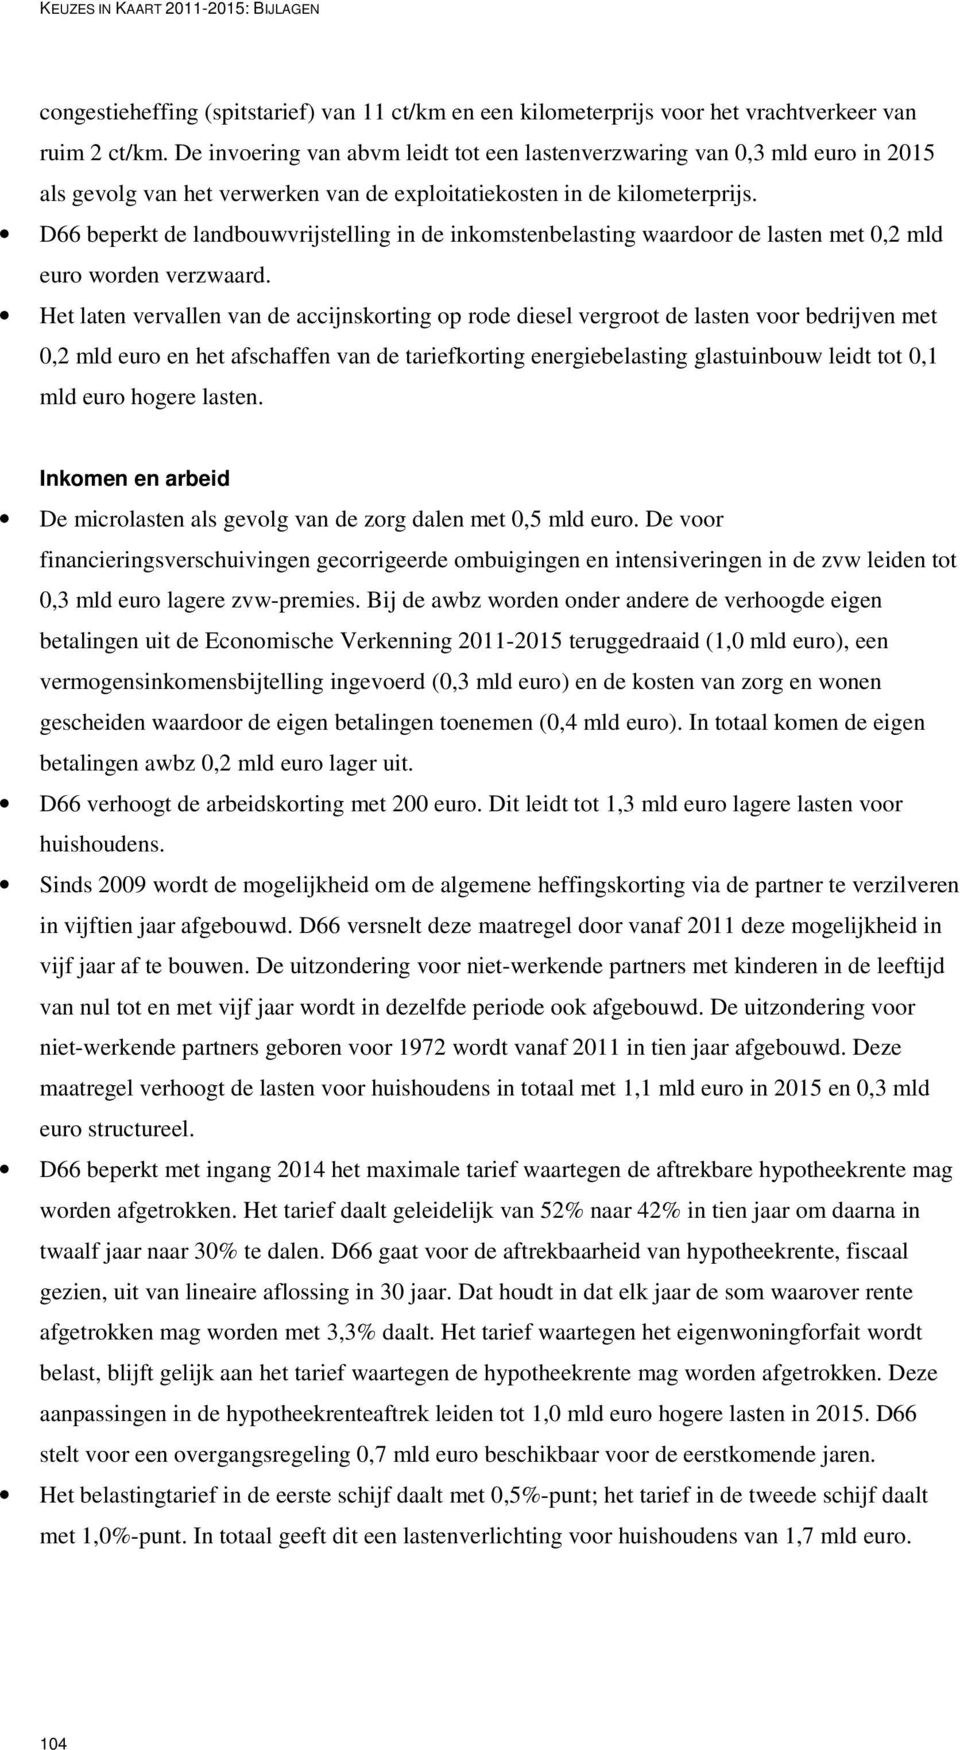 D66 beperkt de landbouwvrijstelling in de inkomstenbelasting waardoor de lasten met 0,2 mld euro worden verzwaard.